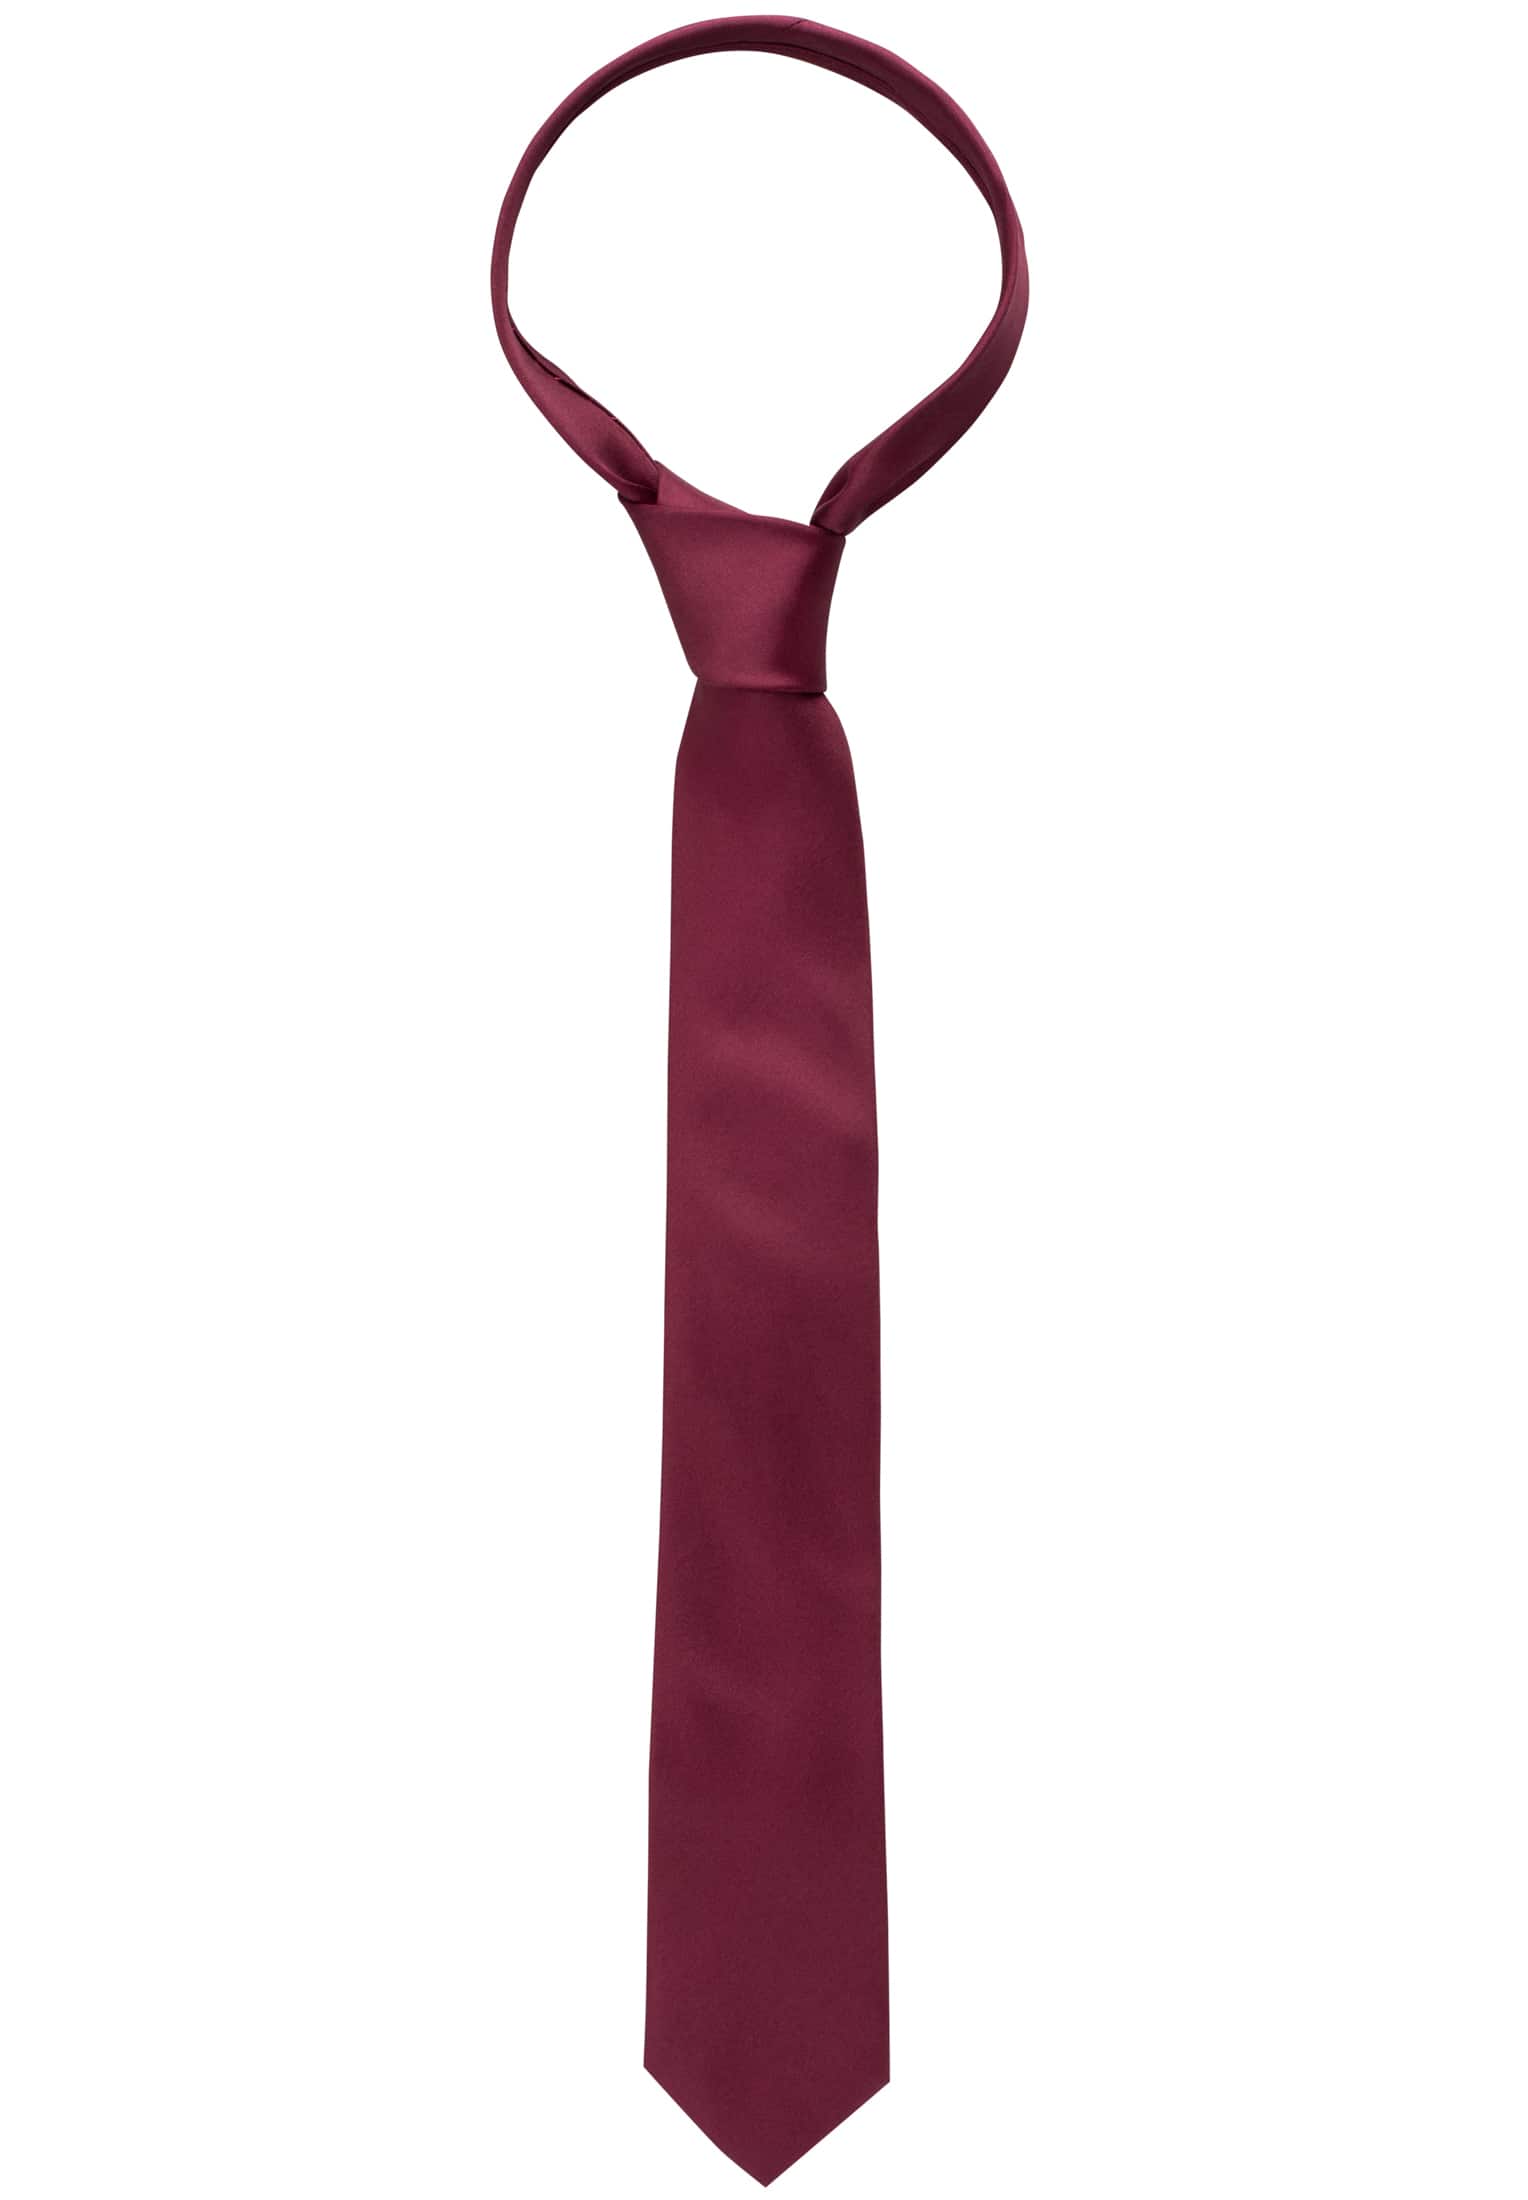 Krawatte in weinrot unifarben | | weinrot 1AC00025-05-62-142 142 